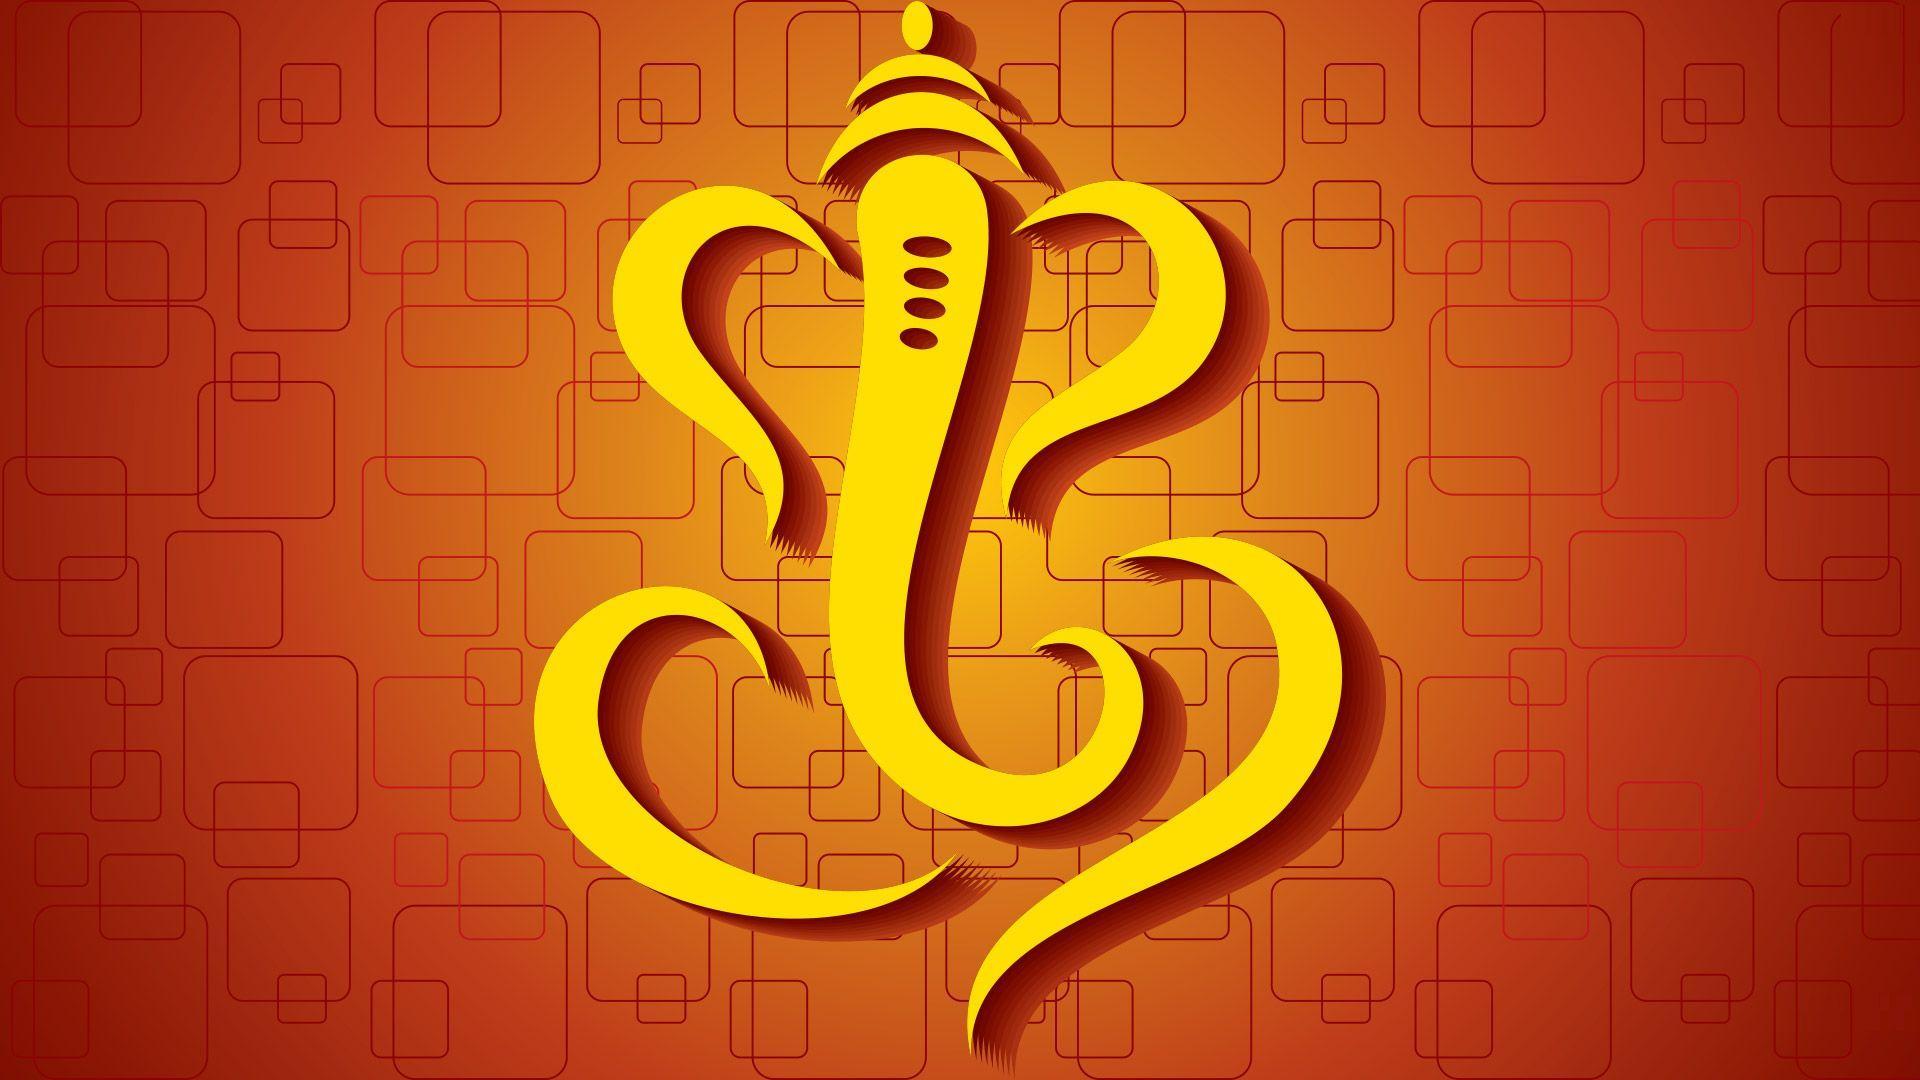 Lord Ganesh Wallpapers - Top Những Hình Ảnh Đẹp